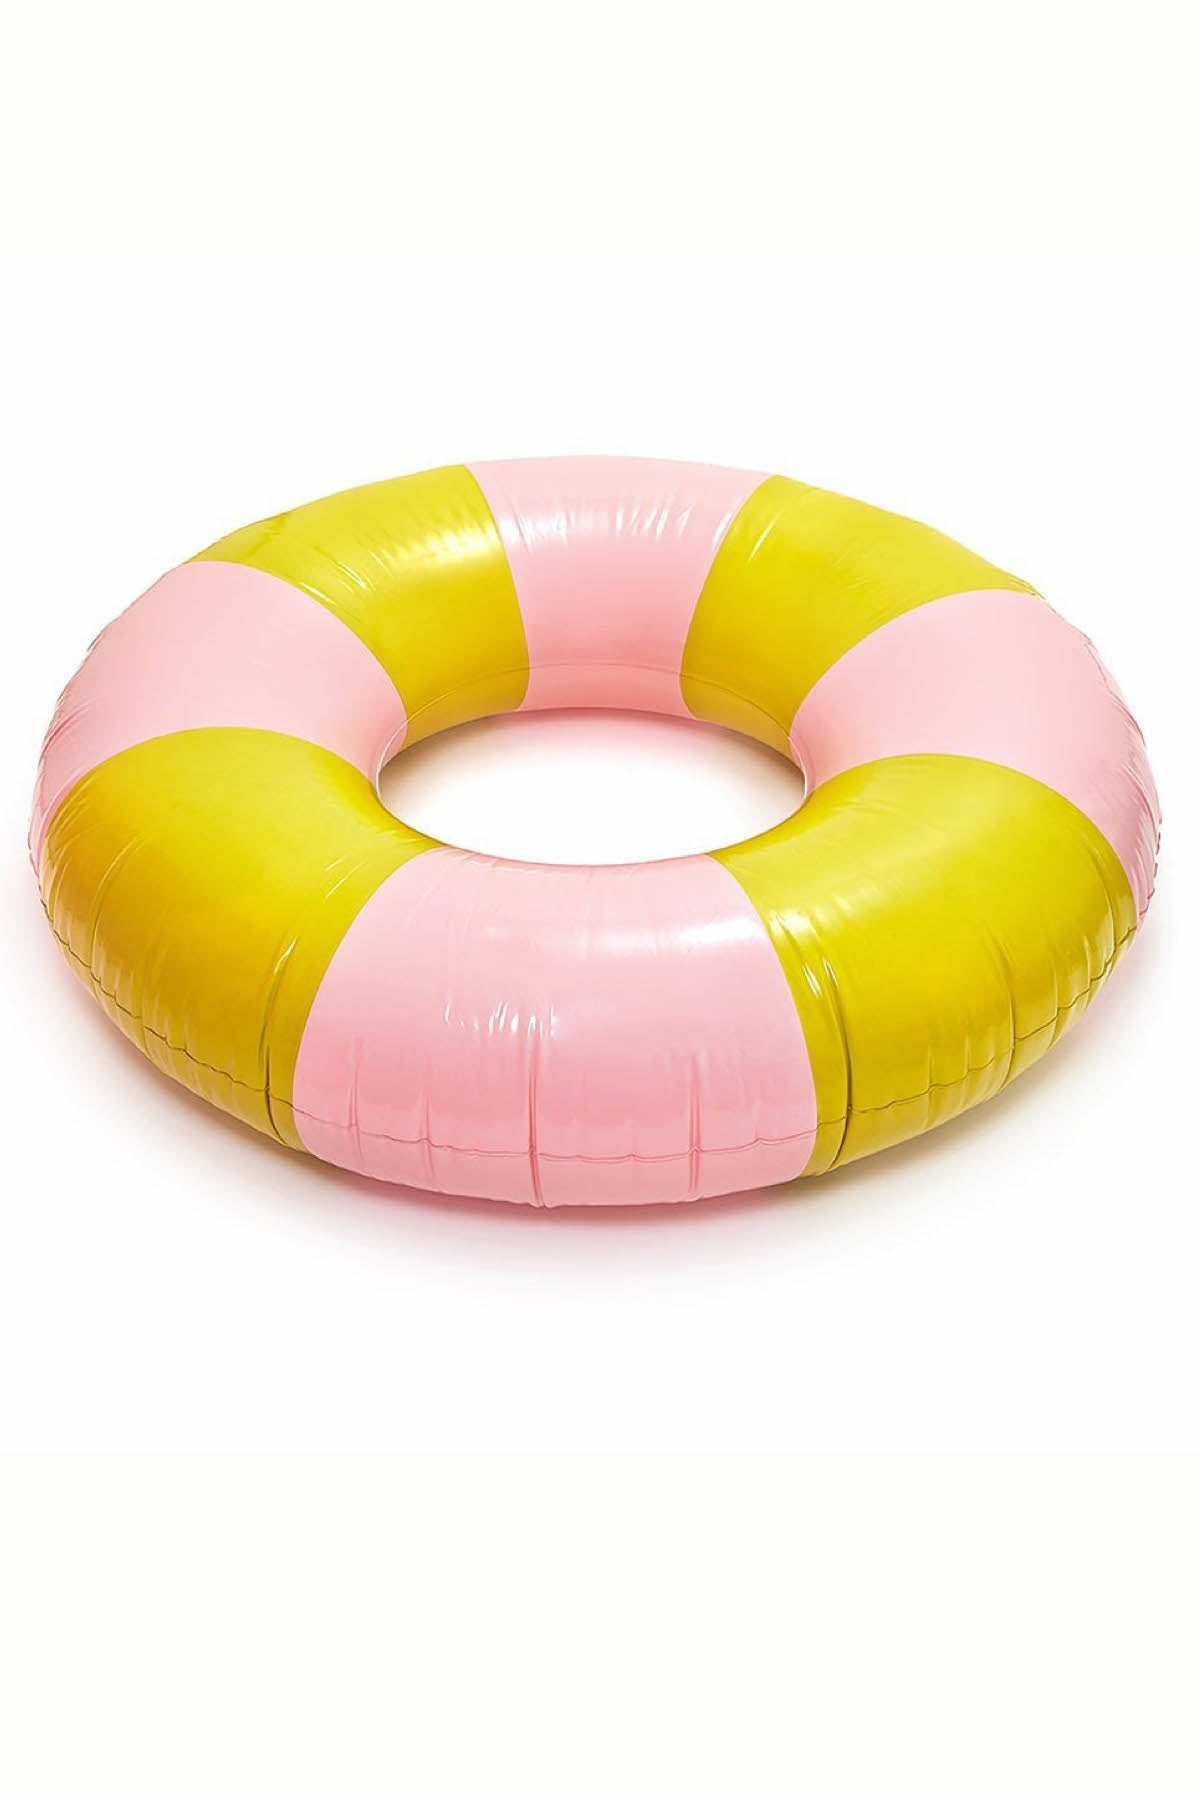 Ban.do Beverly Stripe Float-On Giant Inflatable Inner Tube